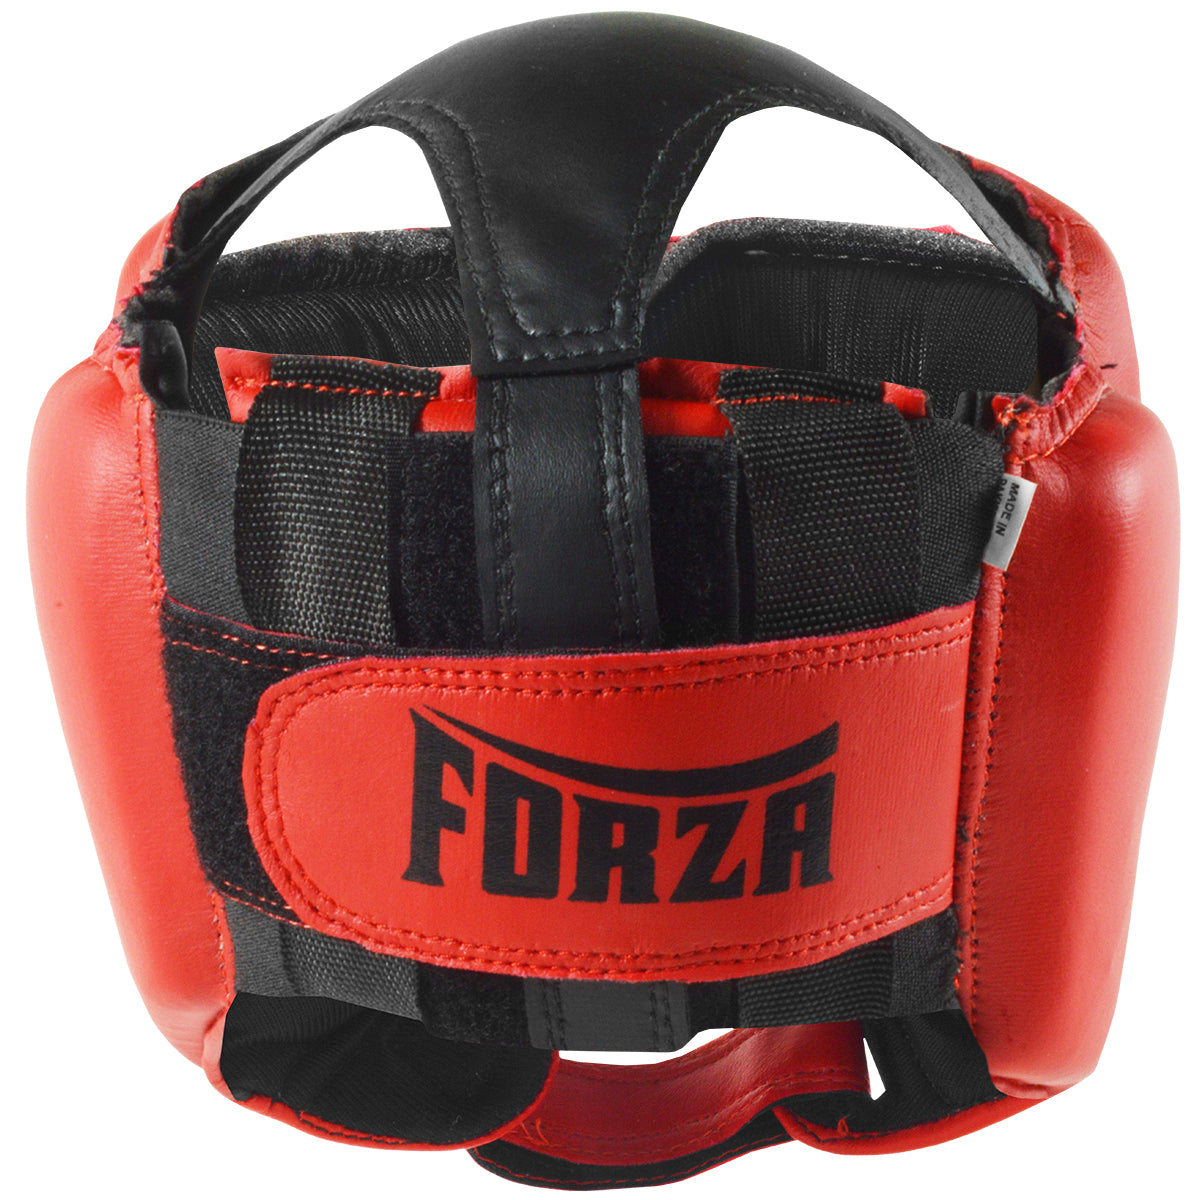 Forza Sports Vinyl Full Face Boxing and MMA Headgear - Red/Black Forza Sports